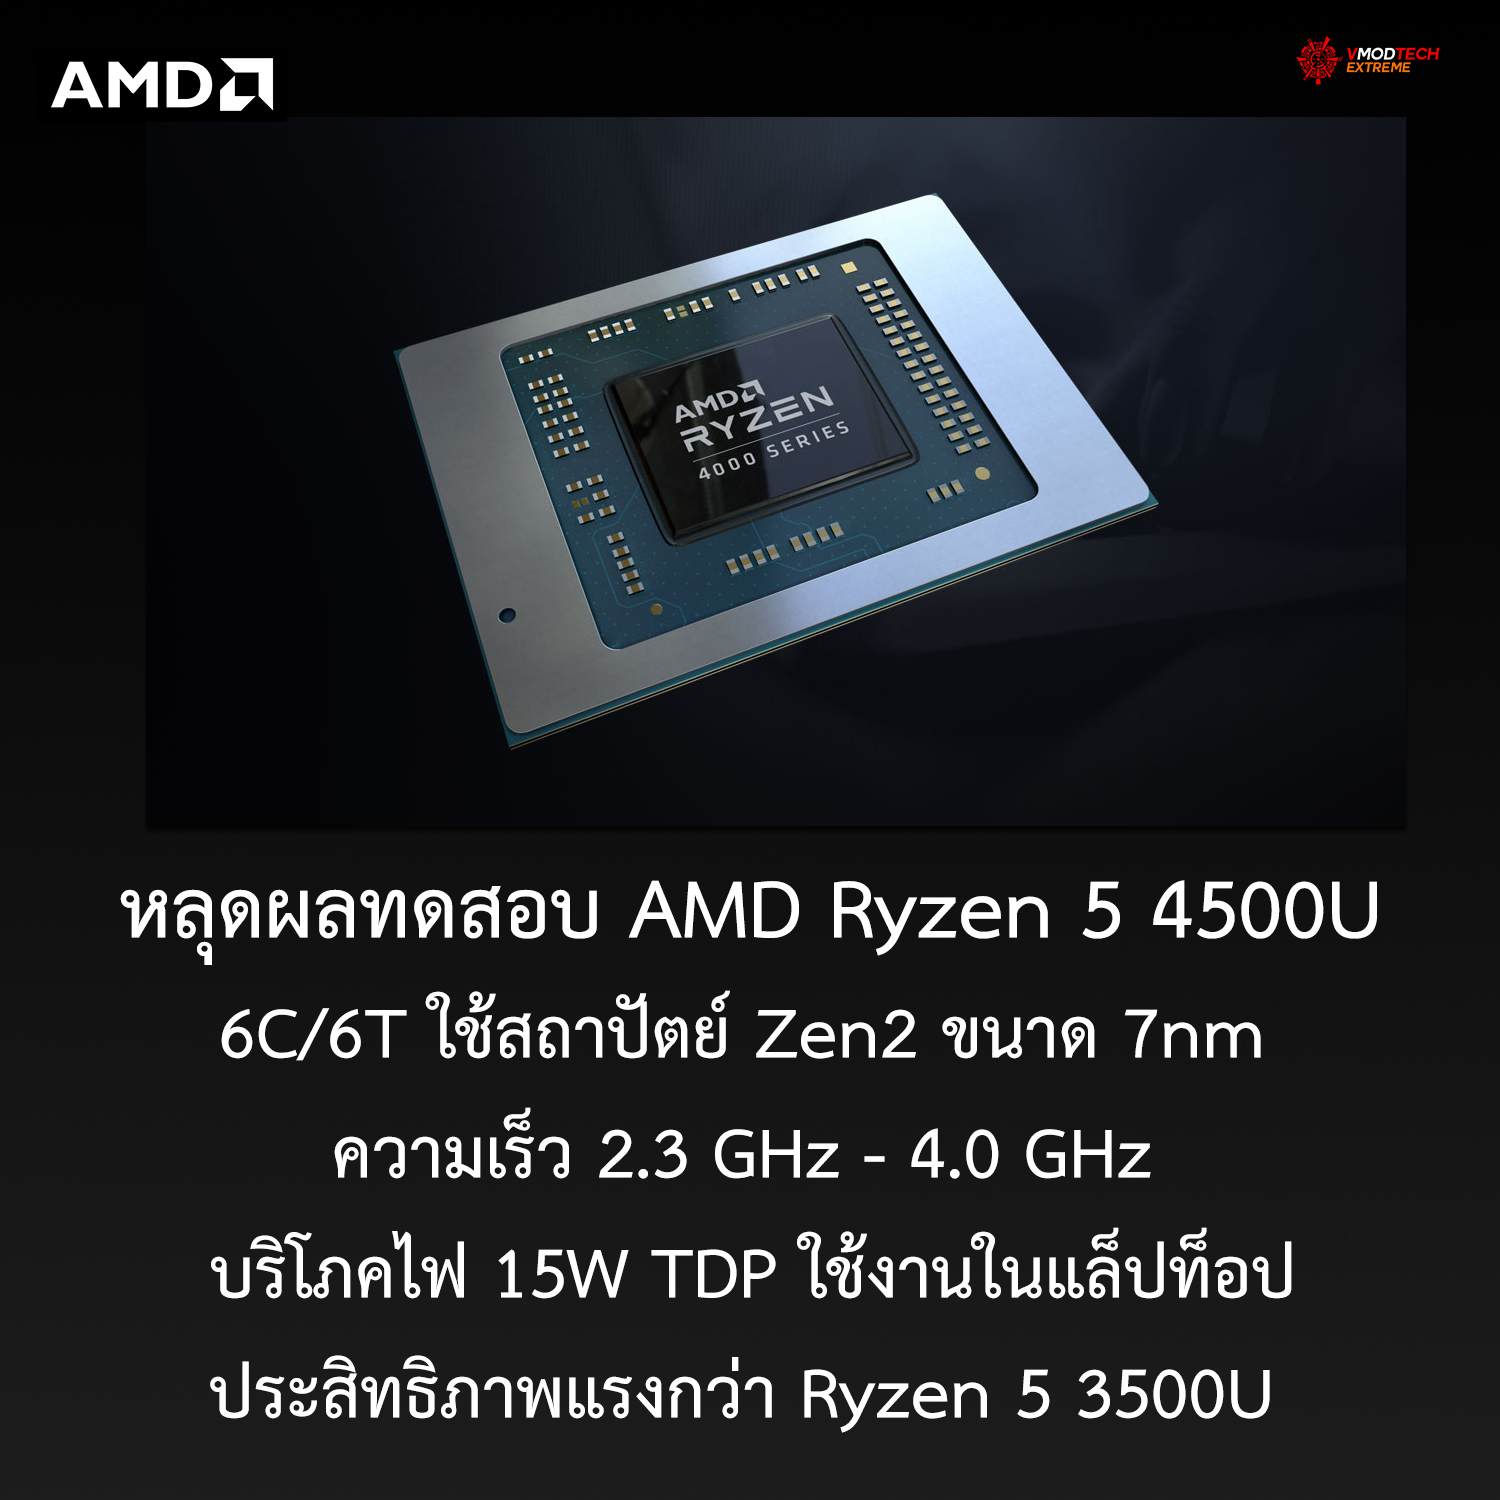 amd ryzen 5 4500u หลุดผลทดสอบ AMD Ryzen 5 4500U 6C/6T ใช้สถาปัตย์ Zen2 ขนาด 7nm ความเร็ว 2.3 GHz   4.0 GHz บริโภคไฟ 15W TDP ใช้งานในแล็ปท็อป